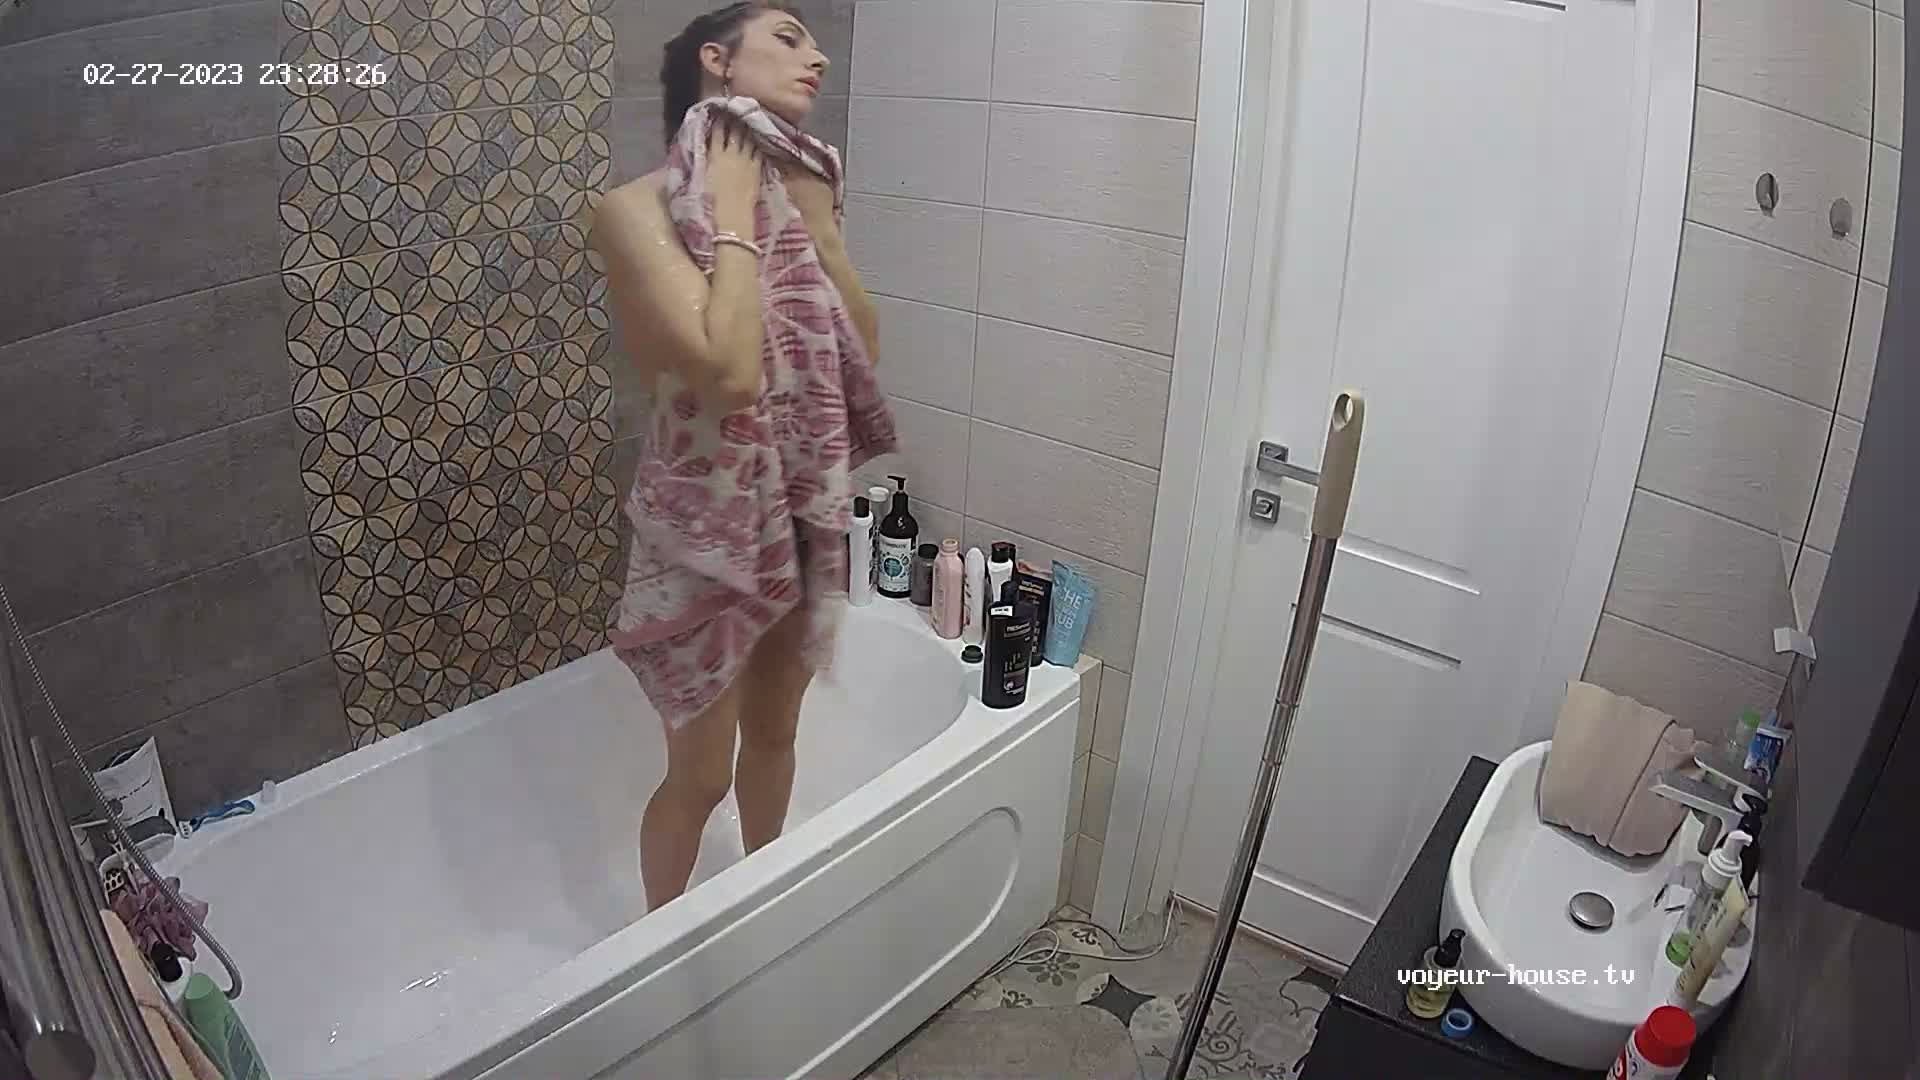 Ayesha Showering Feb 27